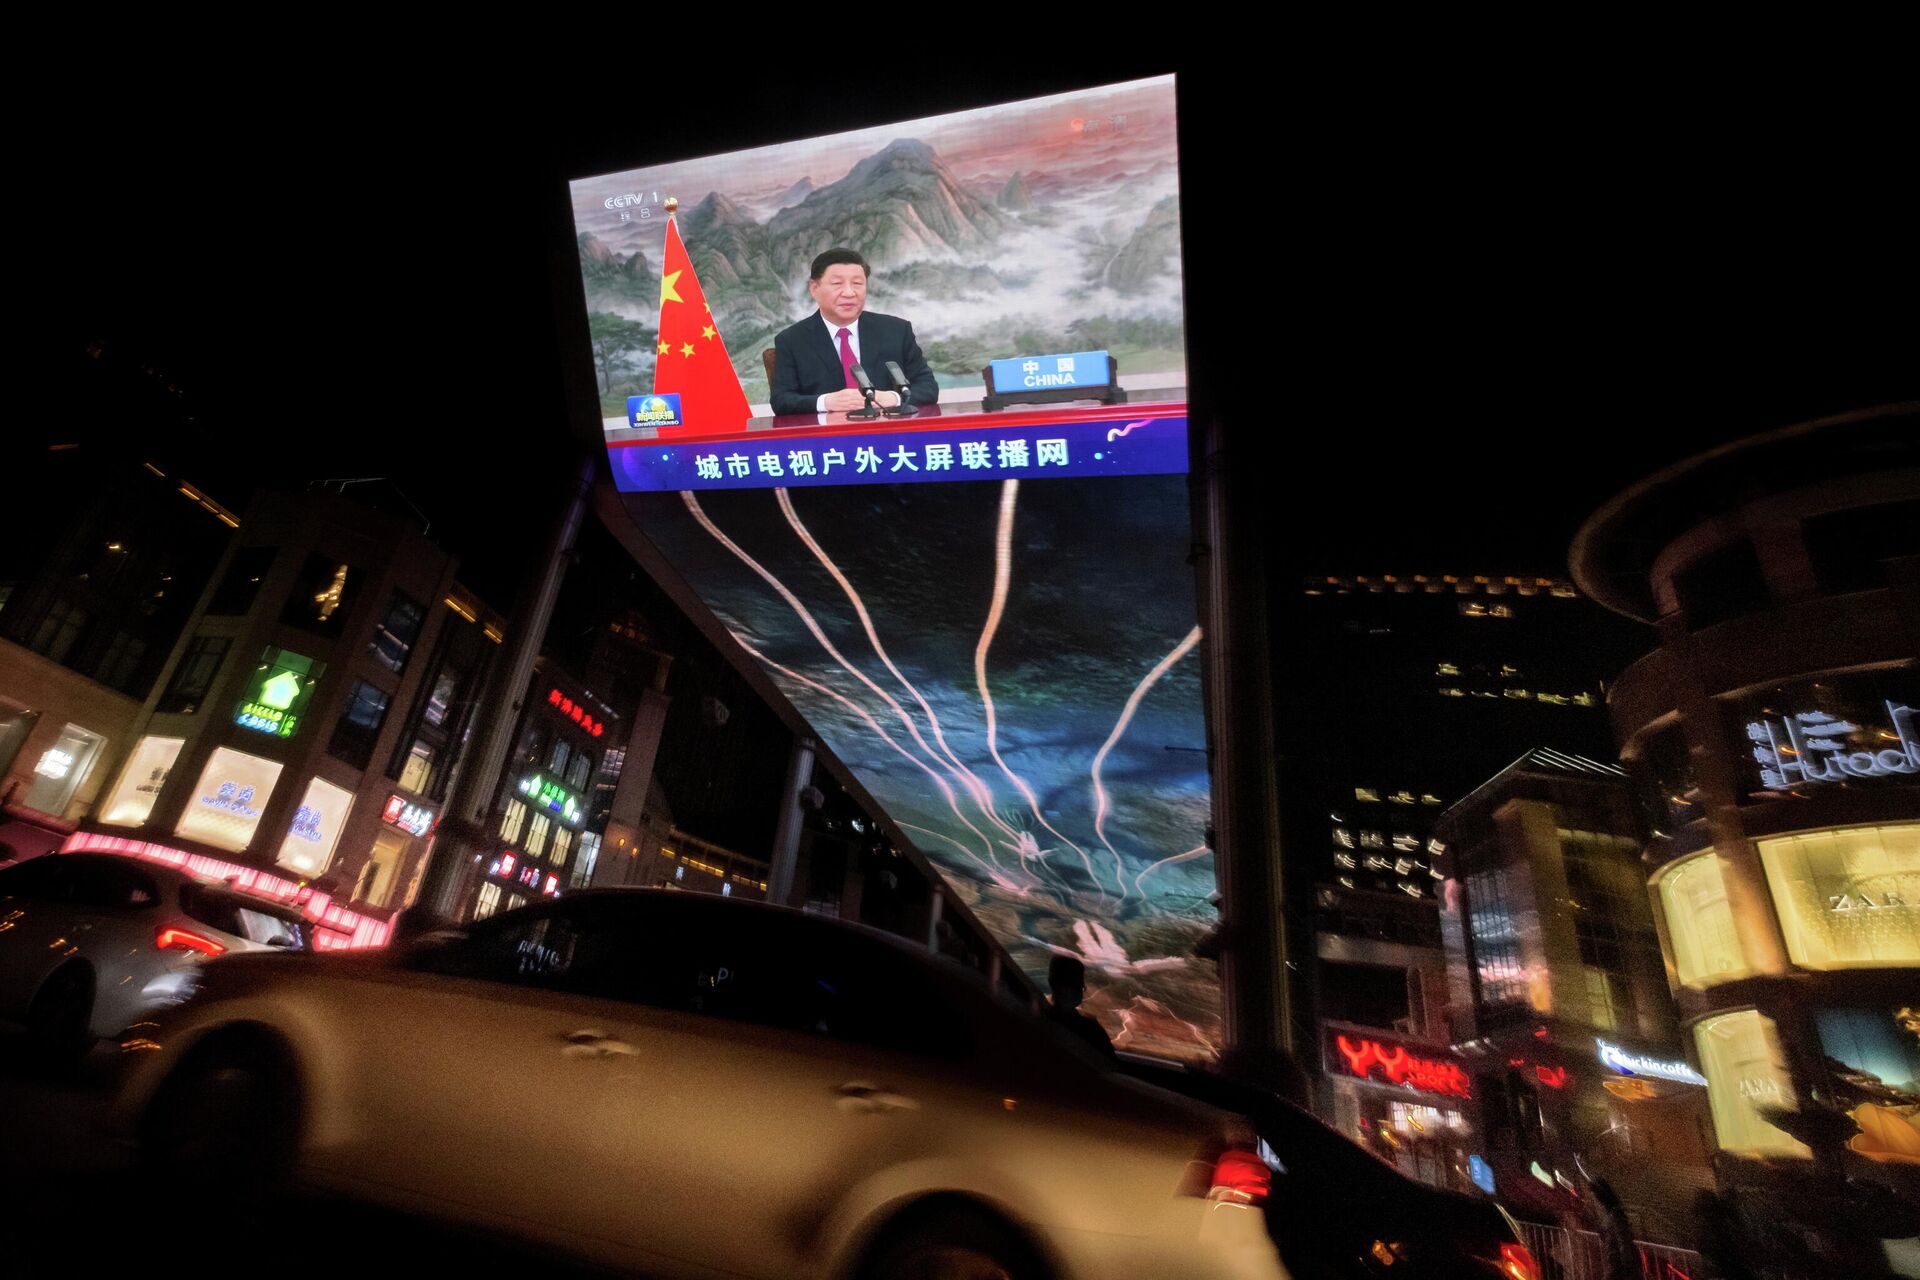 Изображение выступления  генерального секретаря ЦК Коммунистической партии Китая Си Цзиньпина на уличном мониторе в Пекине - РИА Новости, 1920, 23.11.2021